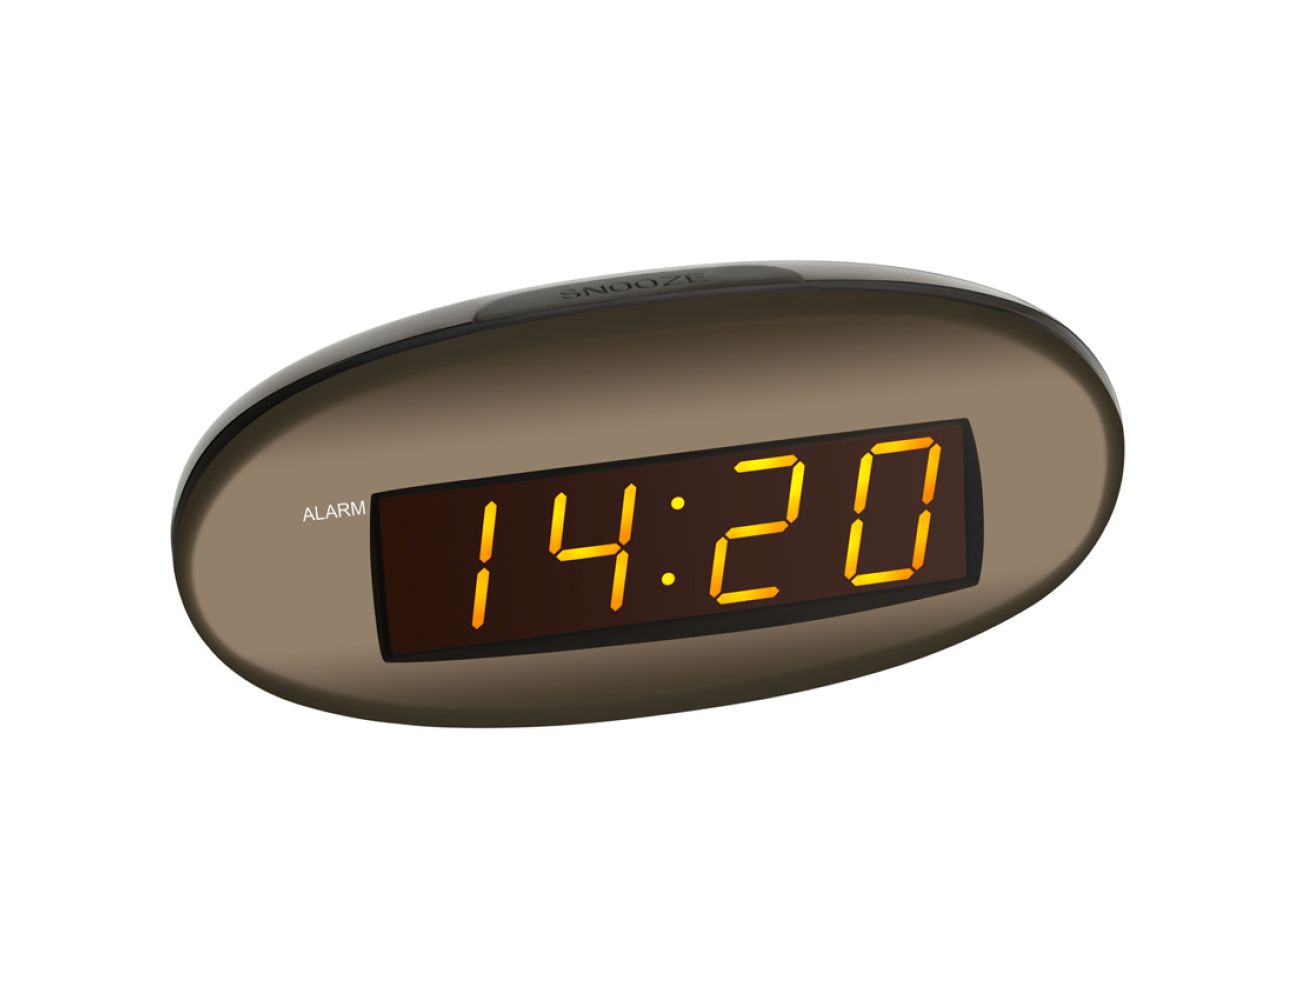 Настольные часы TFA (602005) оранжевая индикация, 70x150x65мм